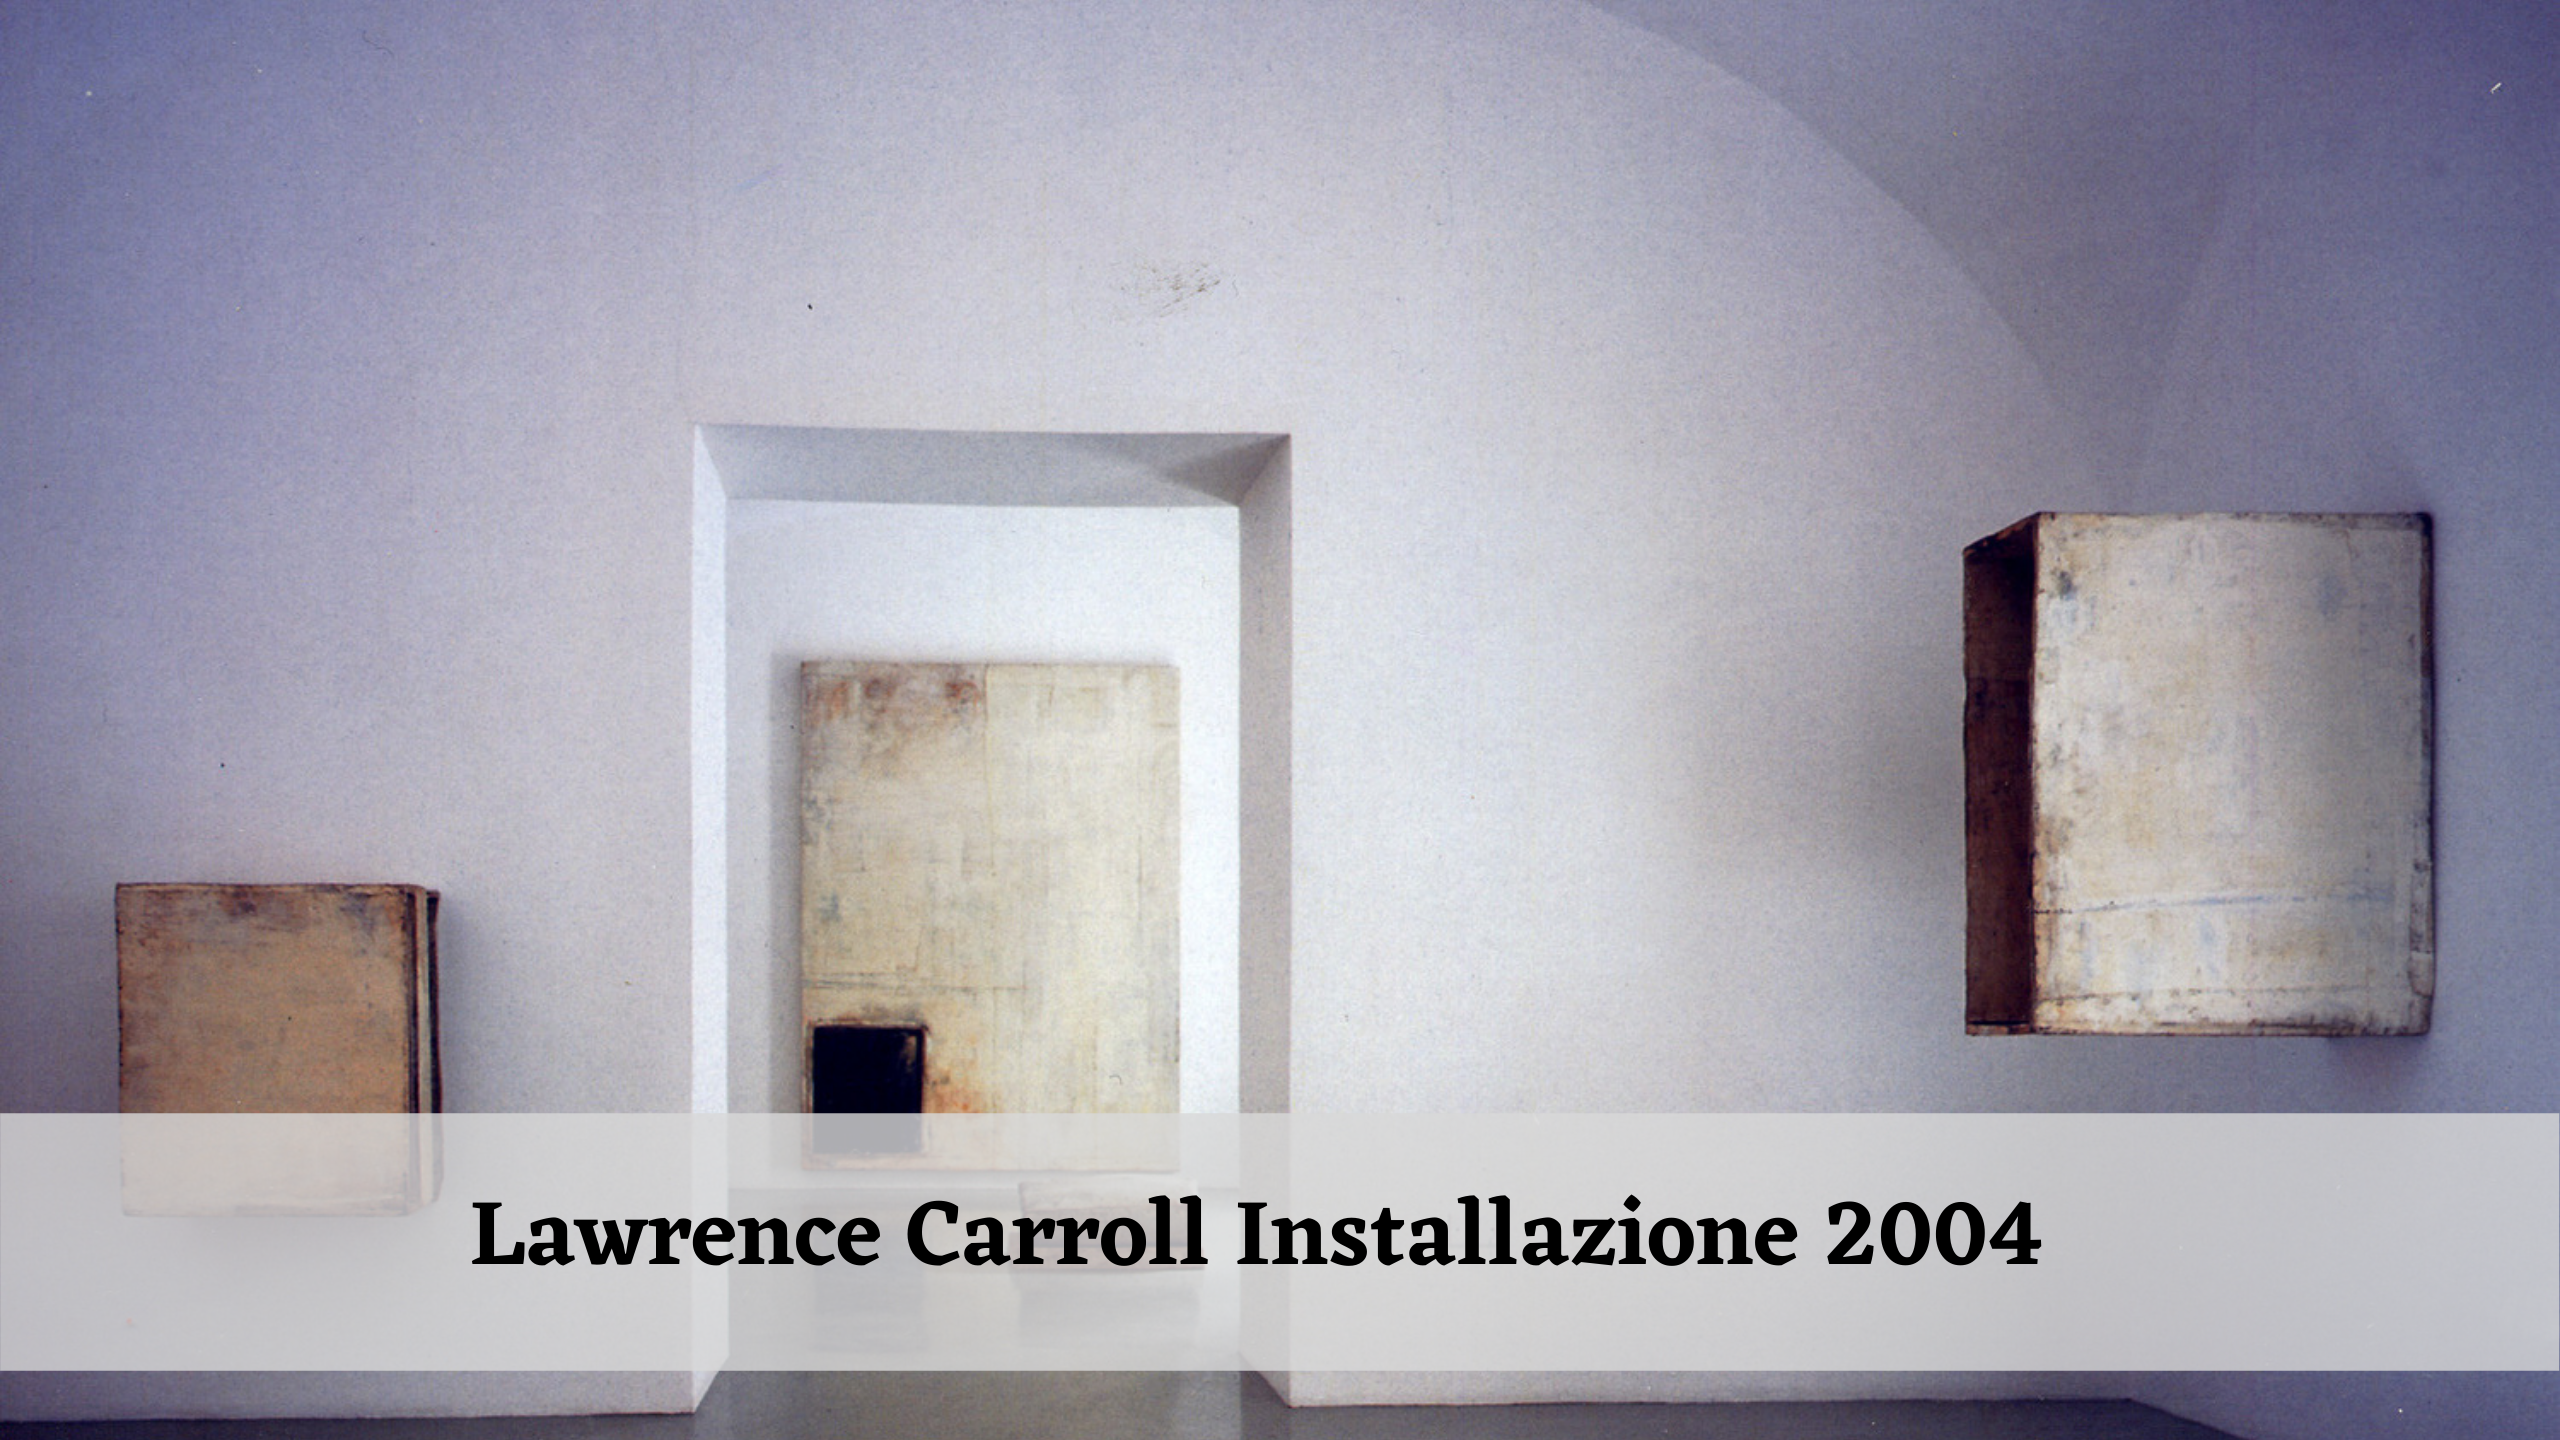 Lawrence Carroll Installazione 2004